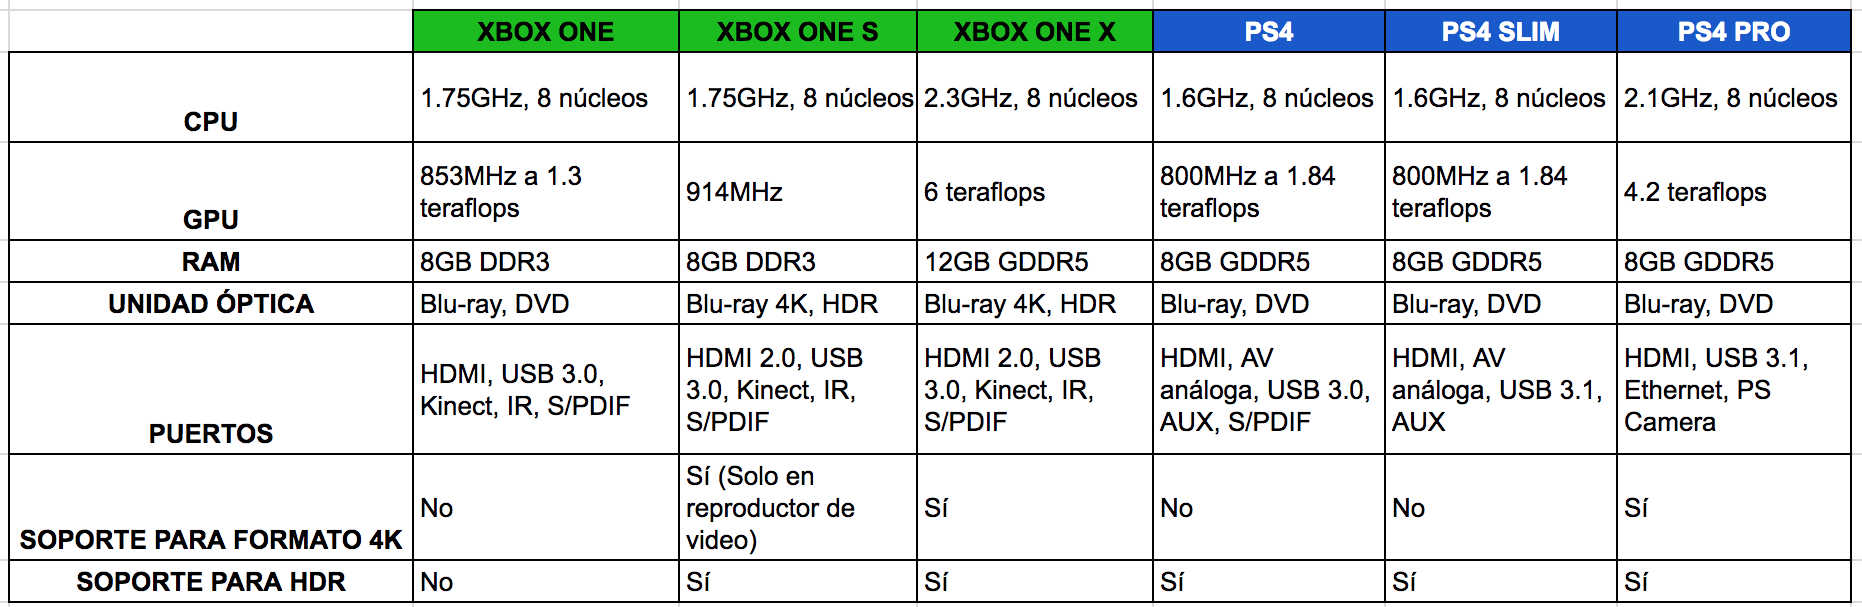 Сколько весит пс 3. Xbox one x и PLAYSTATION 4 Slim. Xbox one x терафлопс. Xbox one s терафлопс. Характеристики Xbox Series s и ps4 Slim.